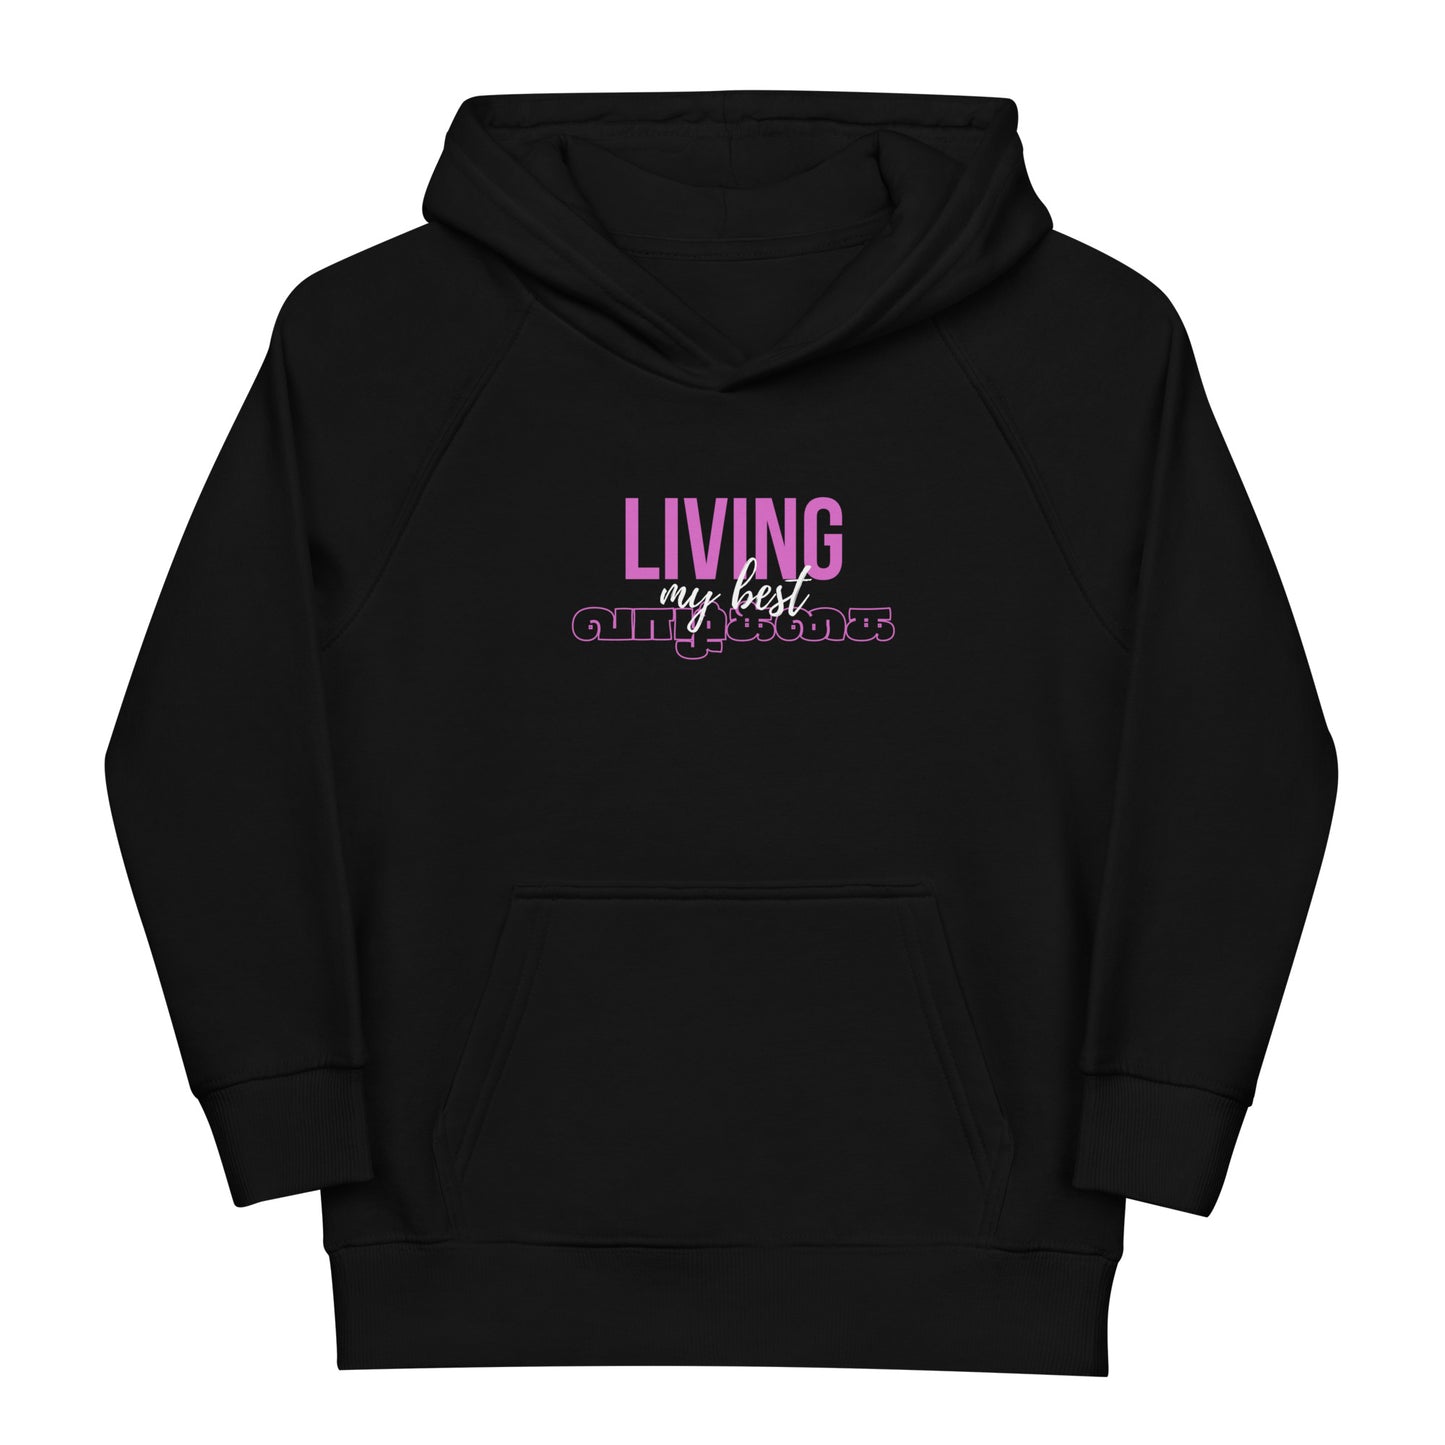 Kids eco hoodie "Living my best life"